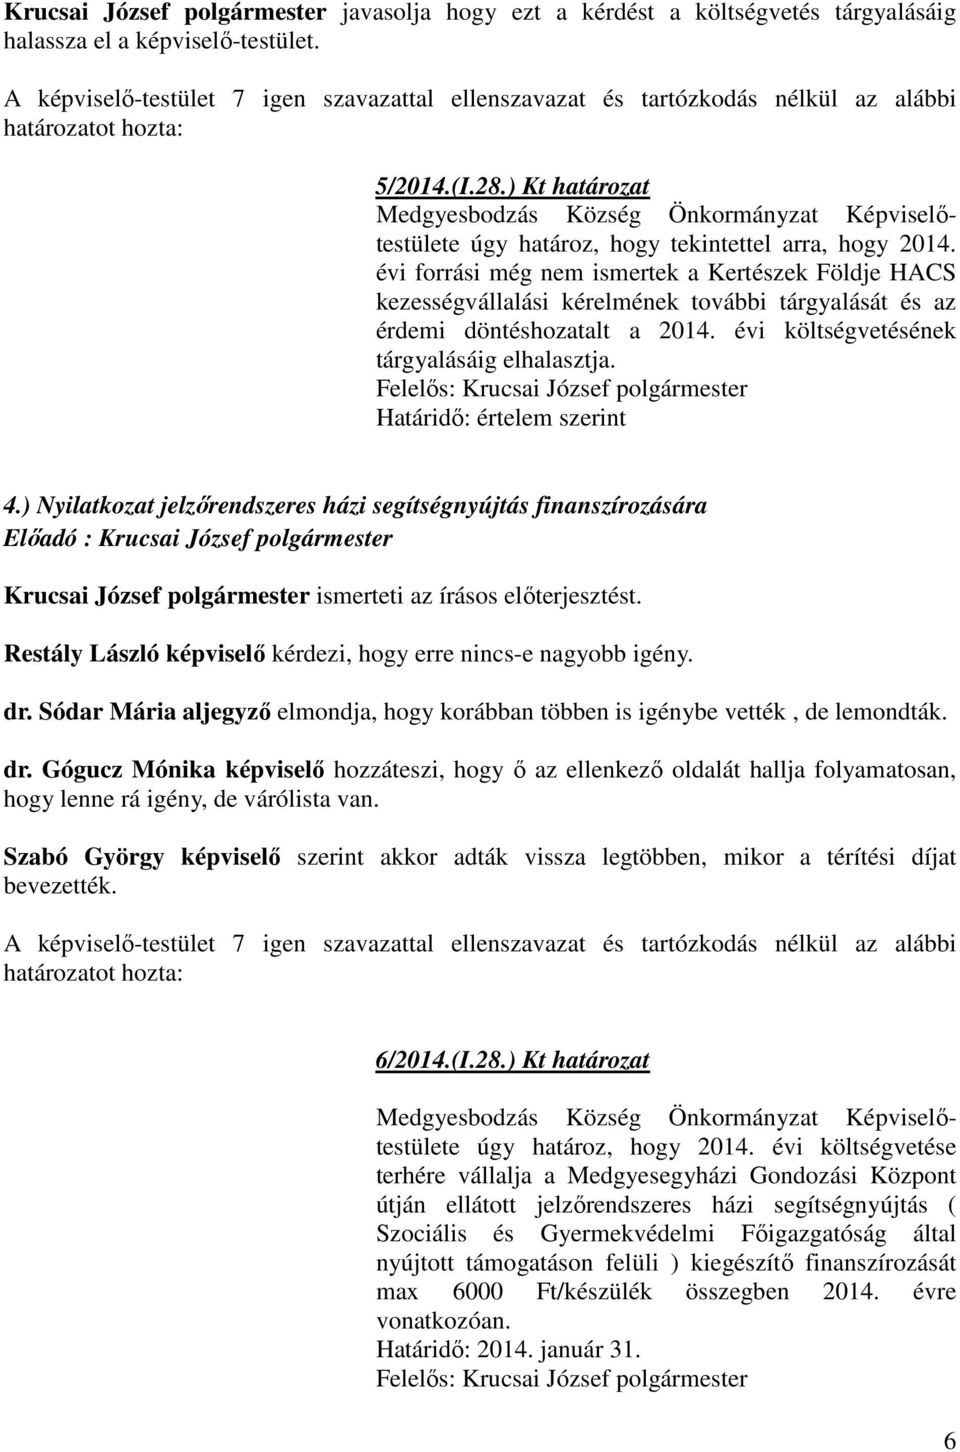 Határidı: értelem szerint 4.) Nyilatkozat jelzırendszeres házi segítségnyújtás finanszírozására Krucsai József polgármester ismerteti az írásos elıterjesztést.